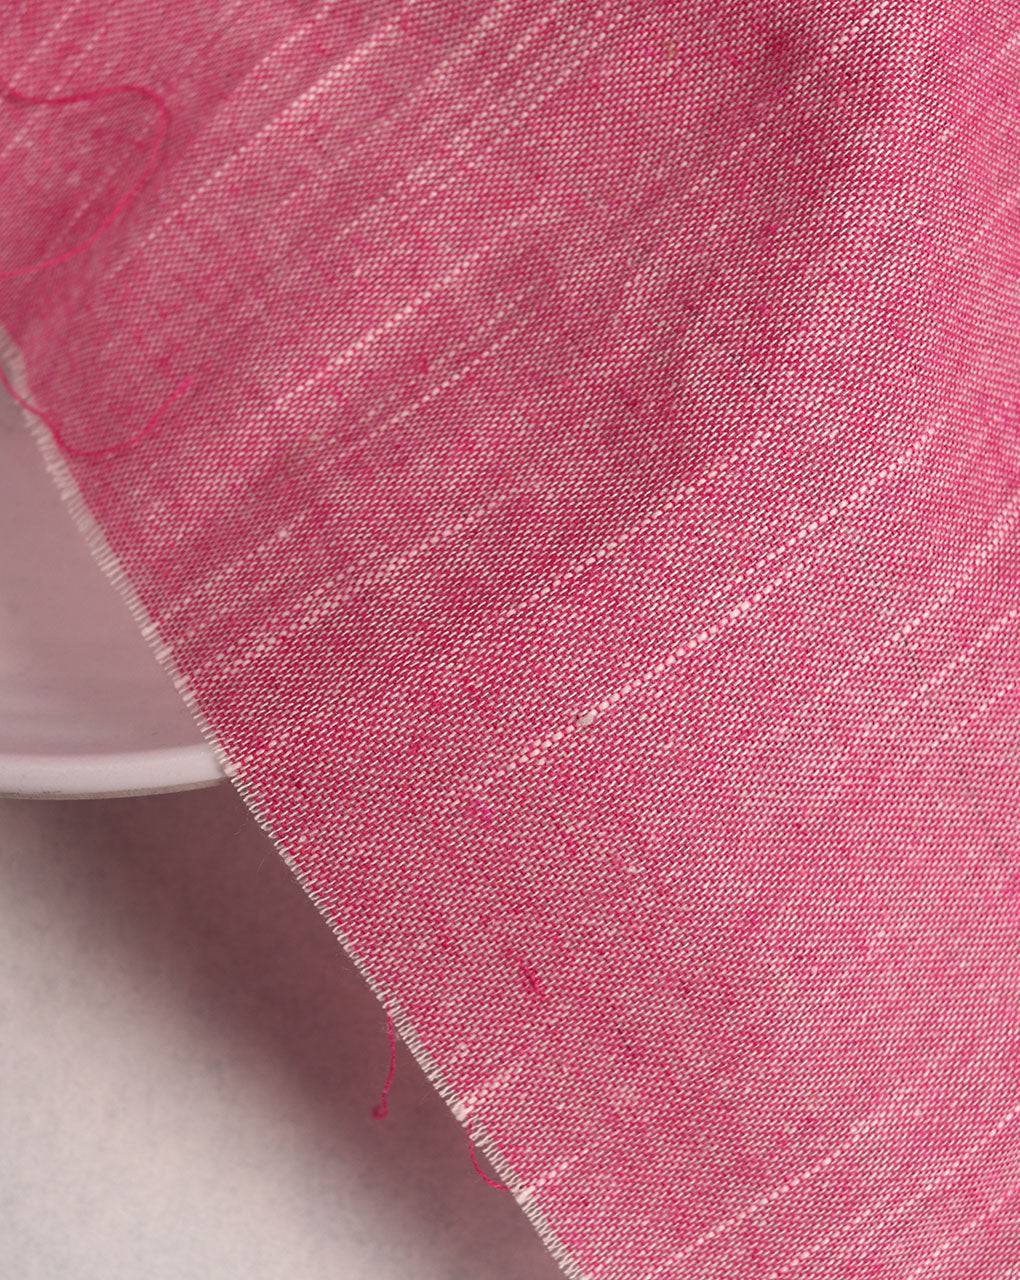 Pink Chambray Slub Cotton Fabric